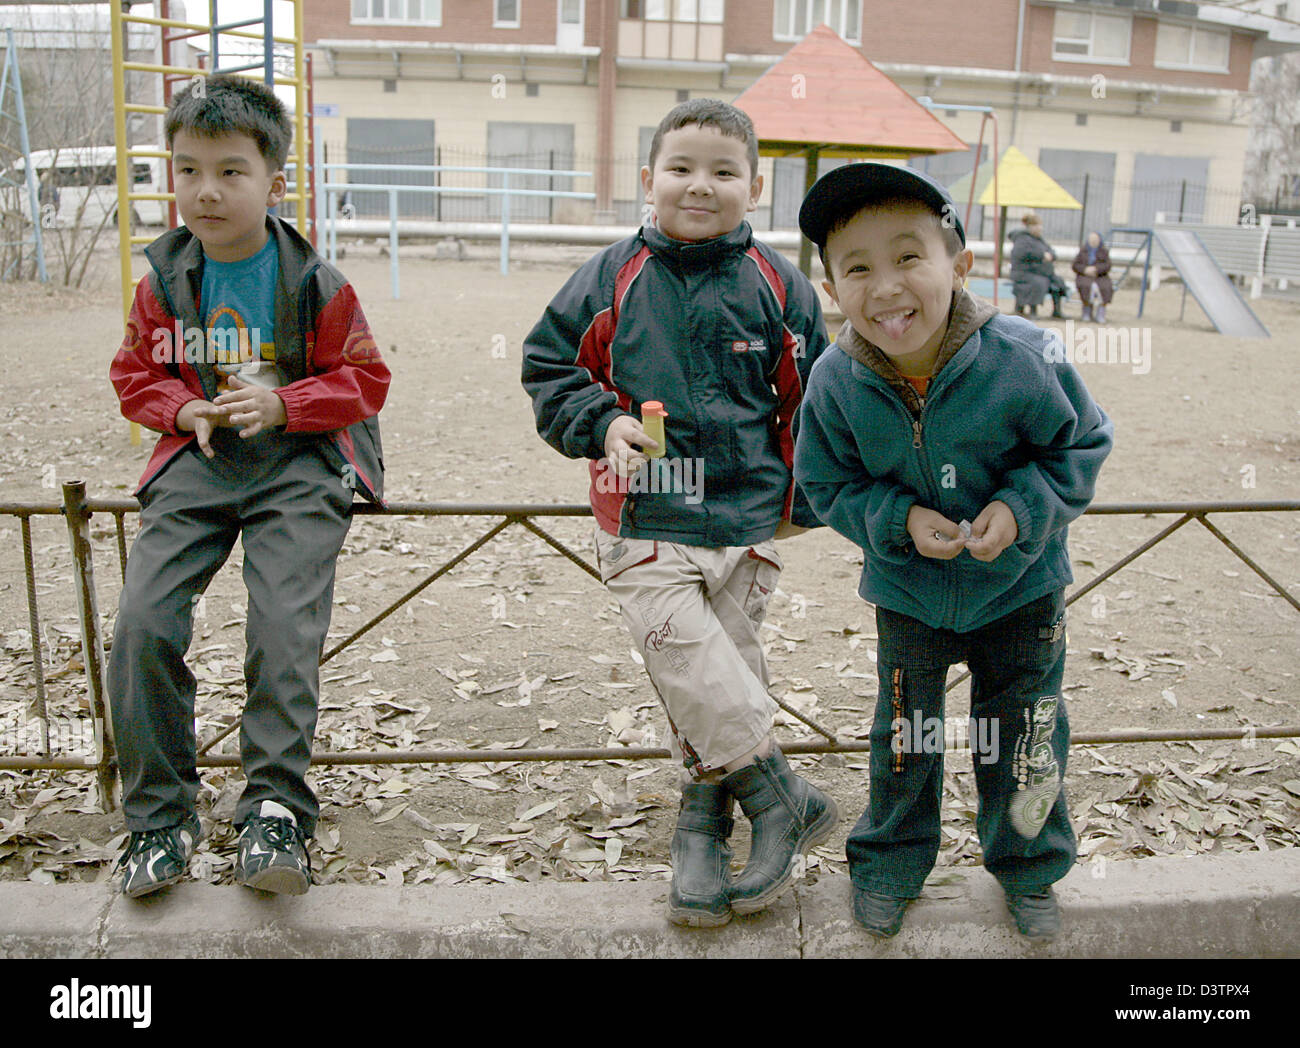 Tre ragazzi sono illustrati in un parco giochi di Astana, Kazakistan,  Martedì, 31 ottobre 2006. 600.000 del Kazakistan di 15 milioni di abitanti  vivono nella capitale Astana. Foto: Peer Grimm Foto stock - Alamy